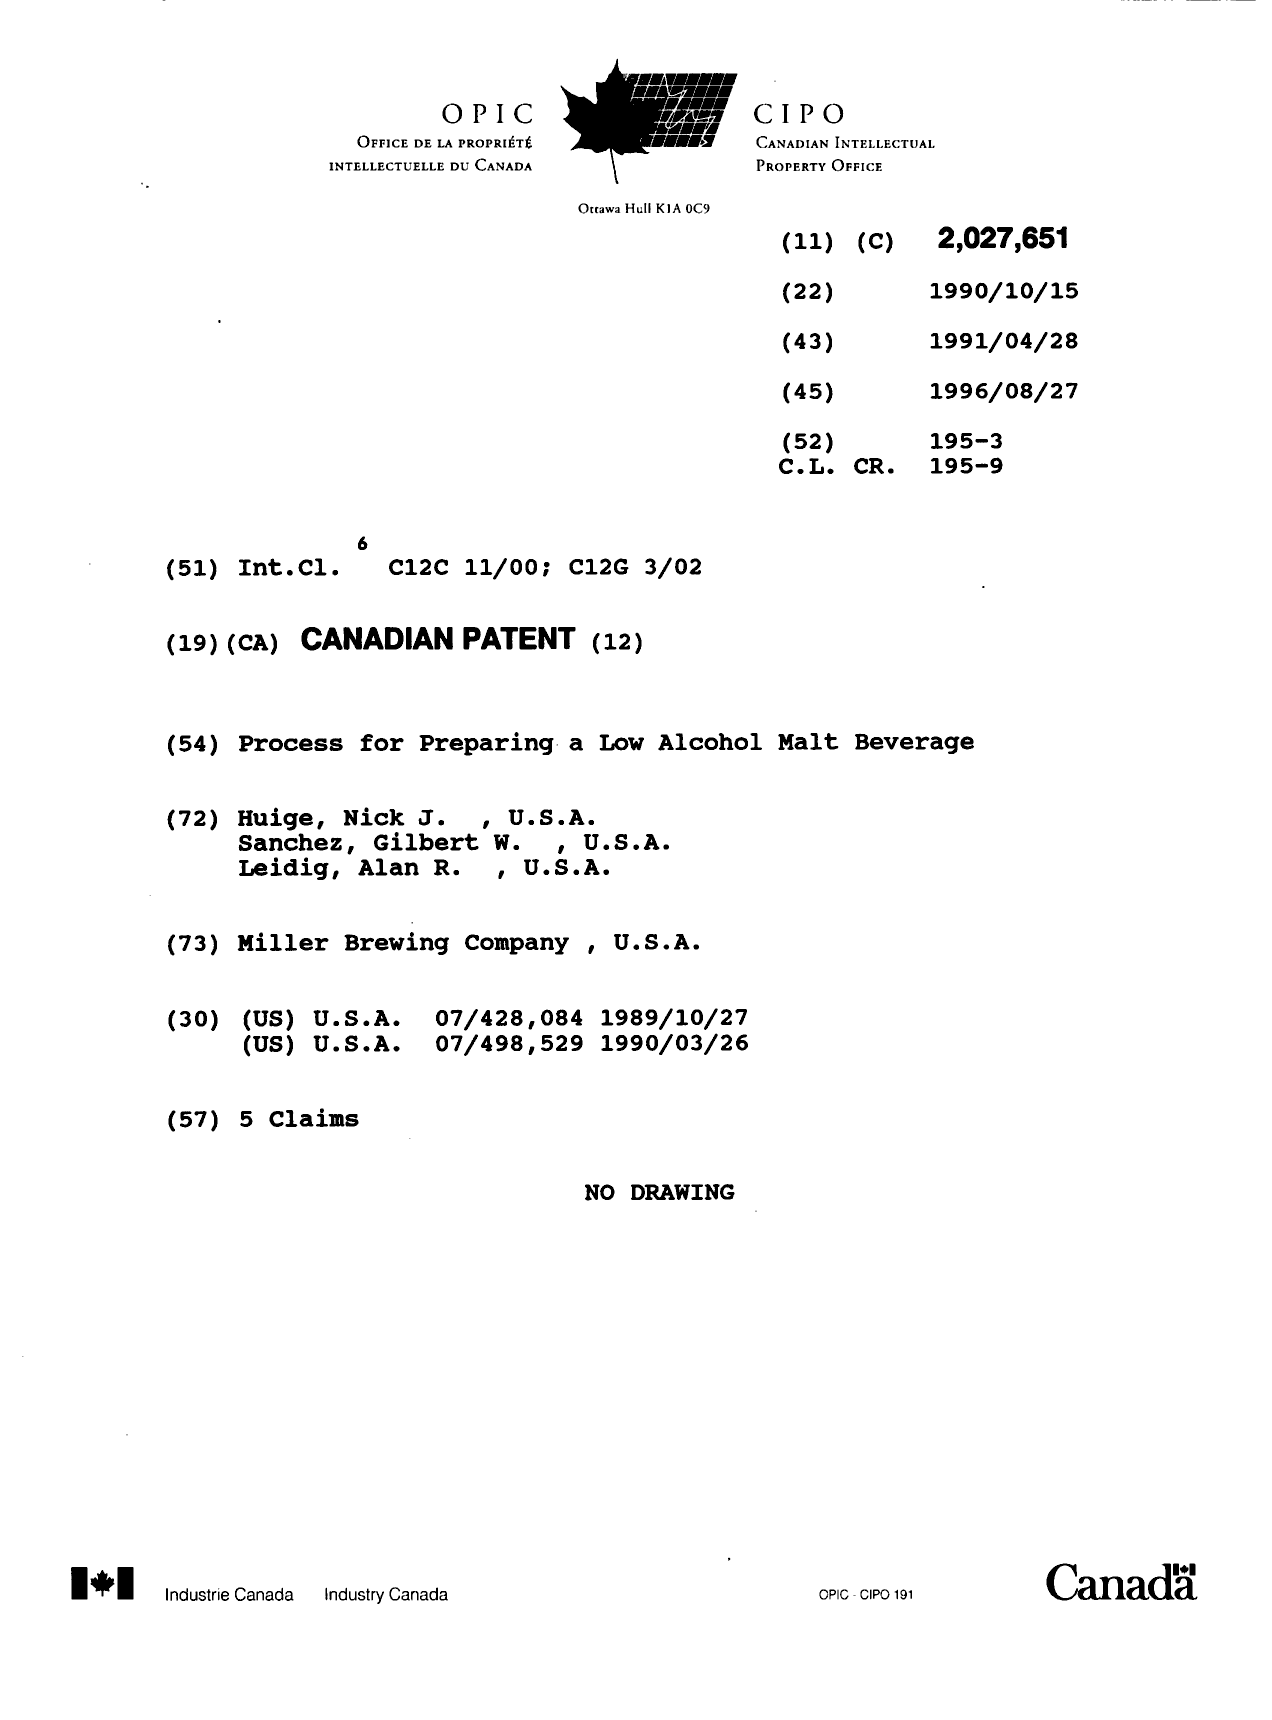 Document de brevet canadien 2027651. Page couverture 19960827. Image 1 de 1